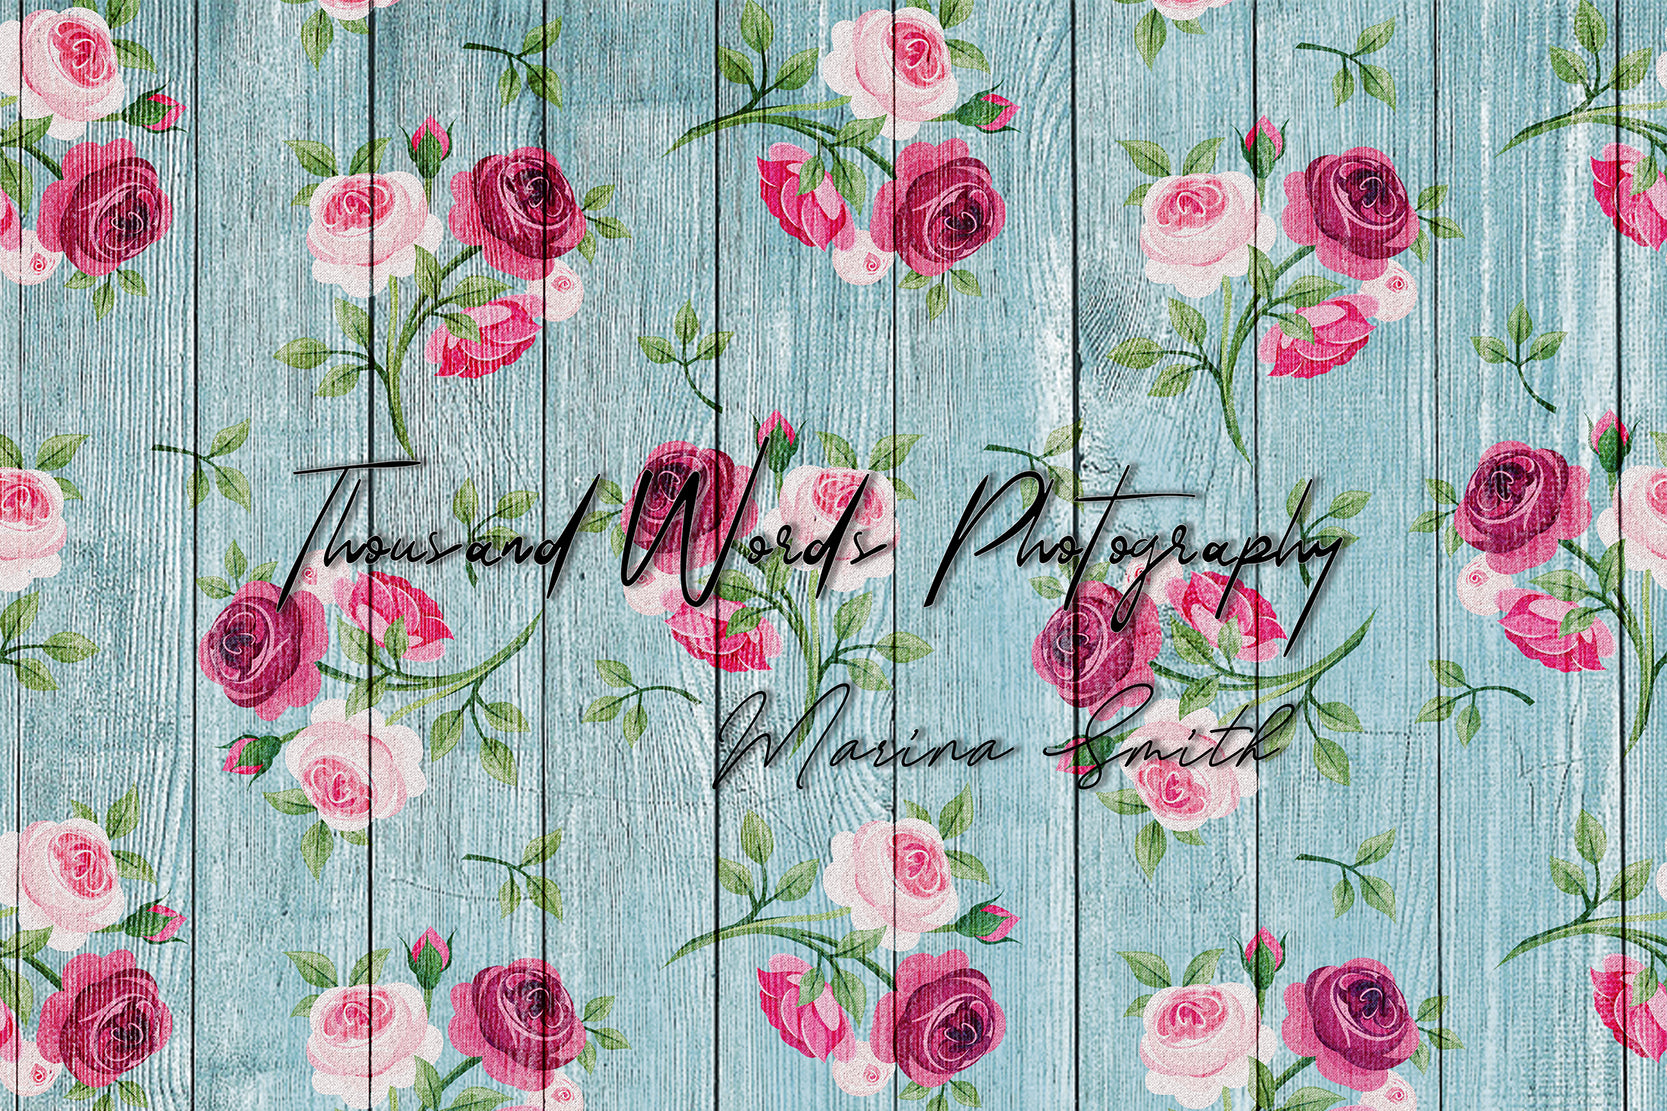 Kate Blumen Holz Rose Blauer Hintergrund für Fotografie von Marina Smith